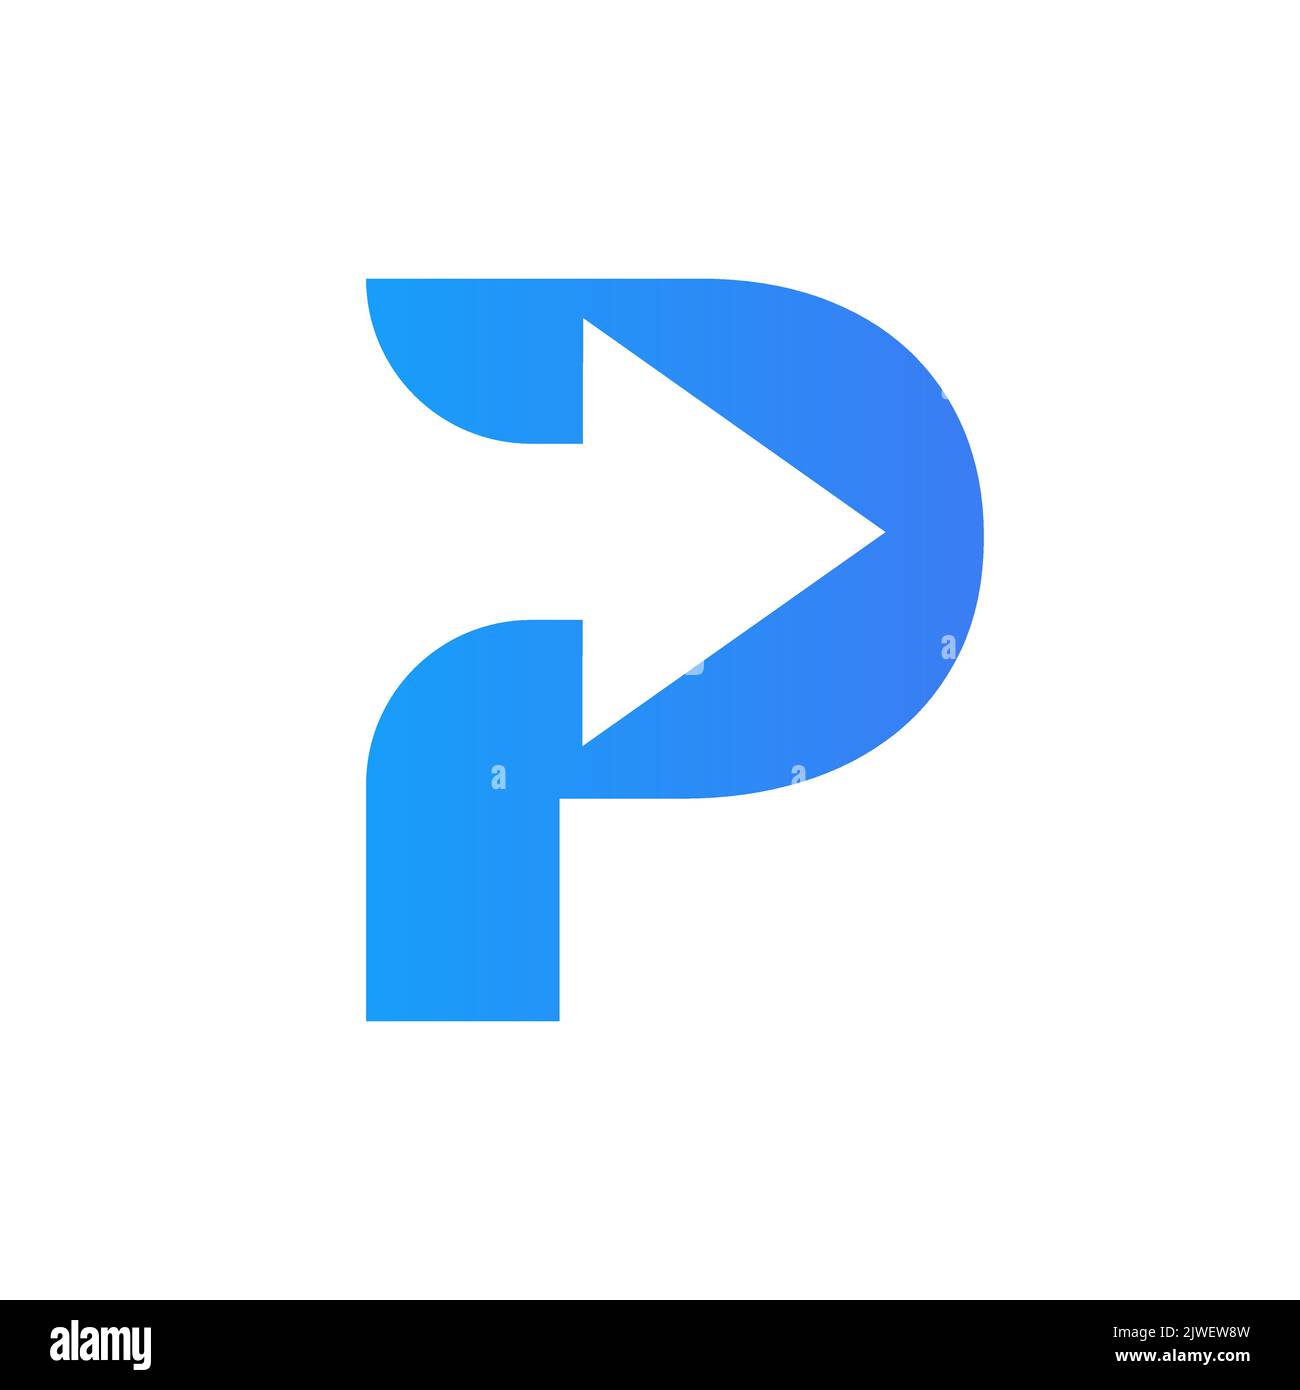 Logo financier lettre P avec flèche de croissance. Elément comptable, modèle de vecteur de symbole d'investissement financier Illustration de Vecteur